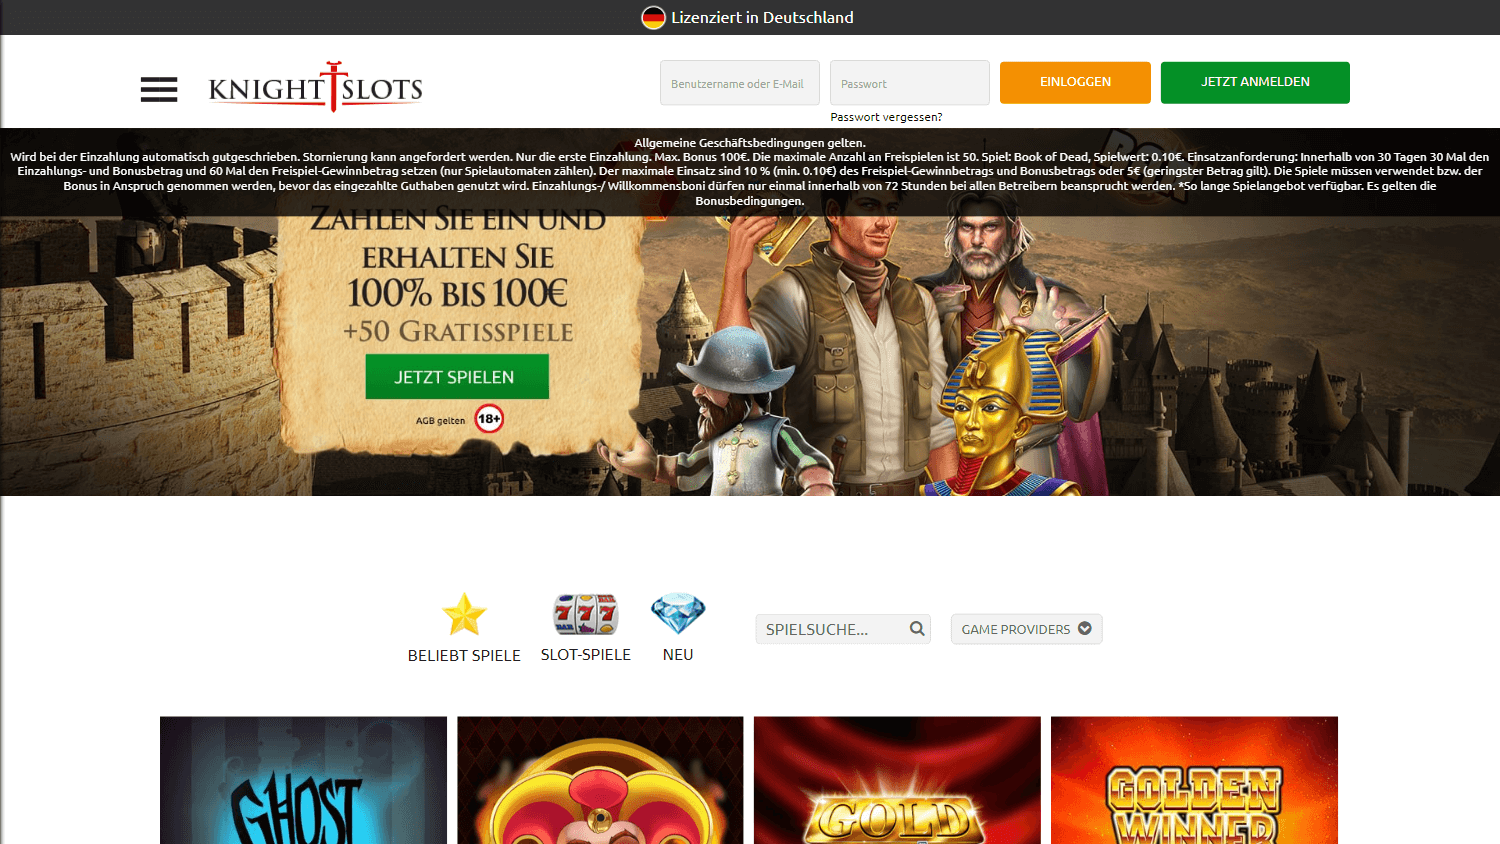 knightslots_casino_de_homepage_desktop